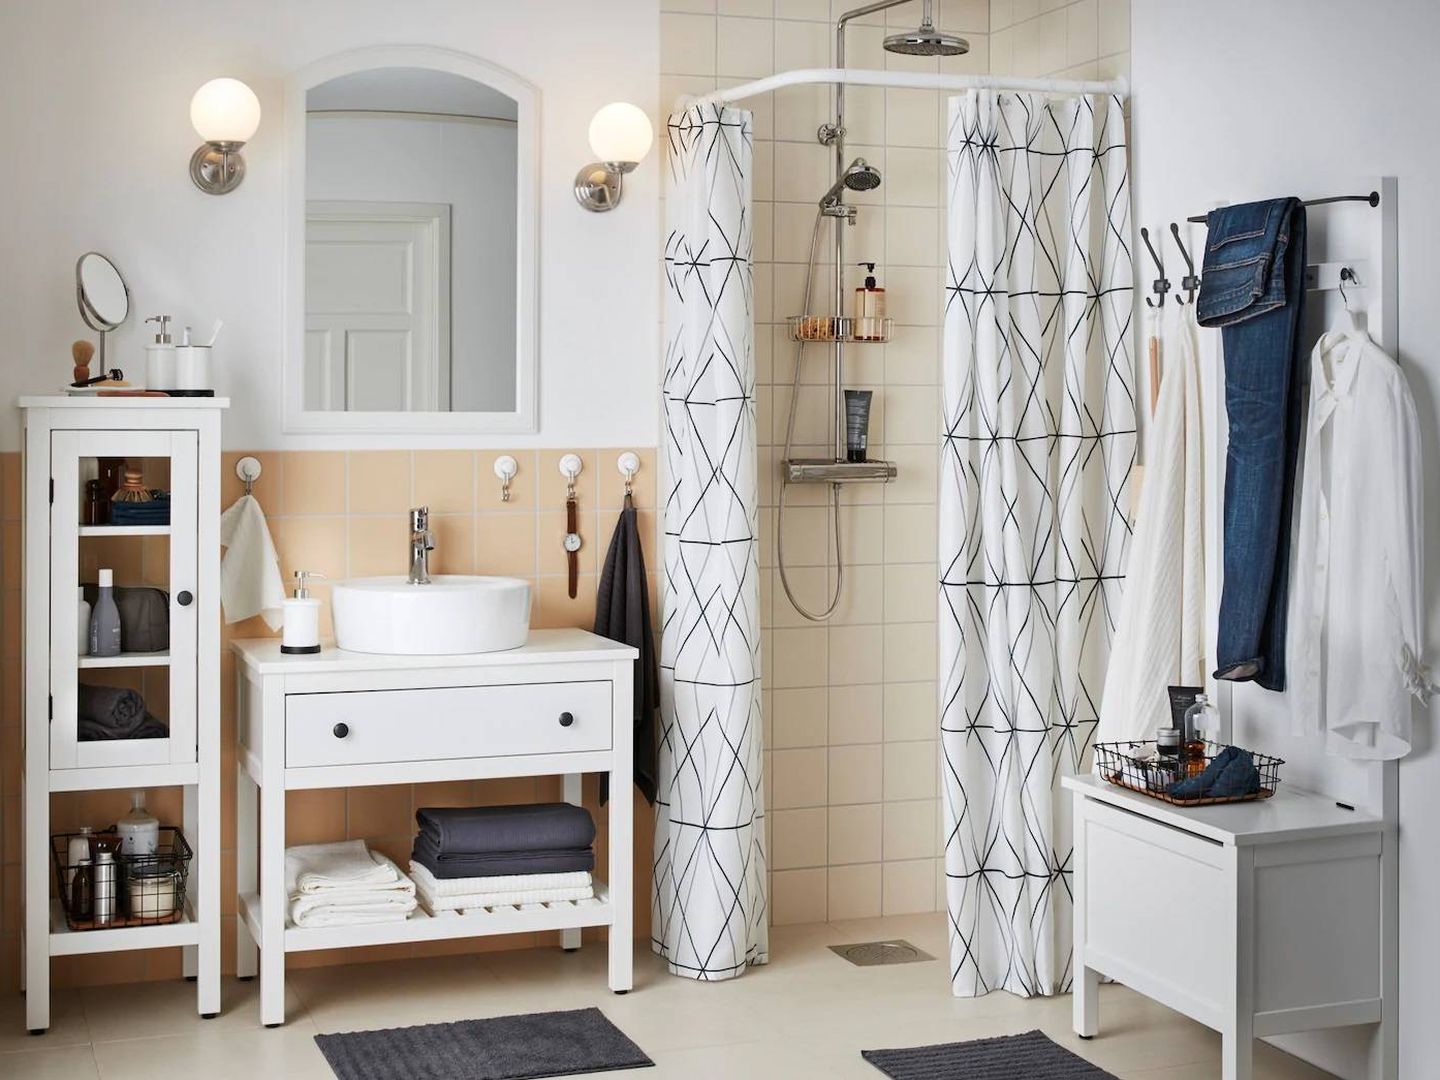 Consigue un baño organizado con Ikea. (Cortesía)